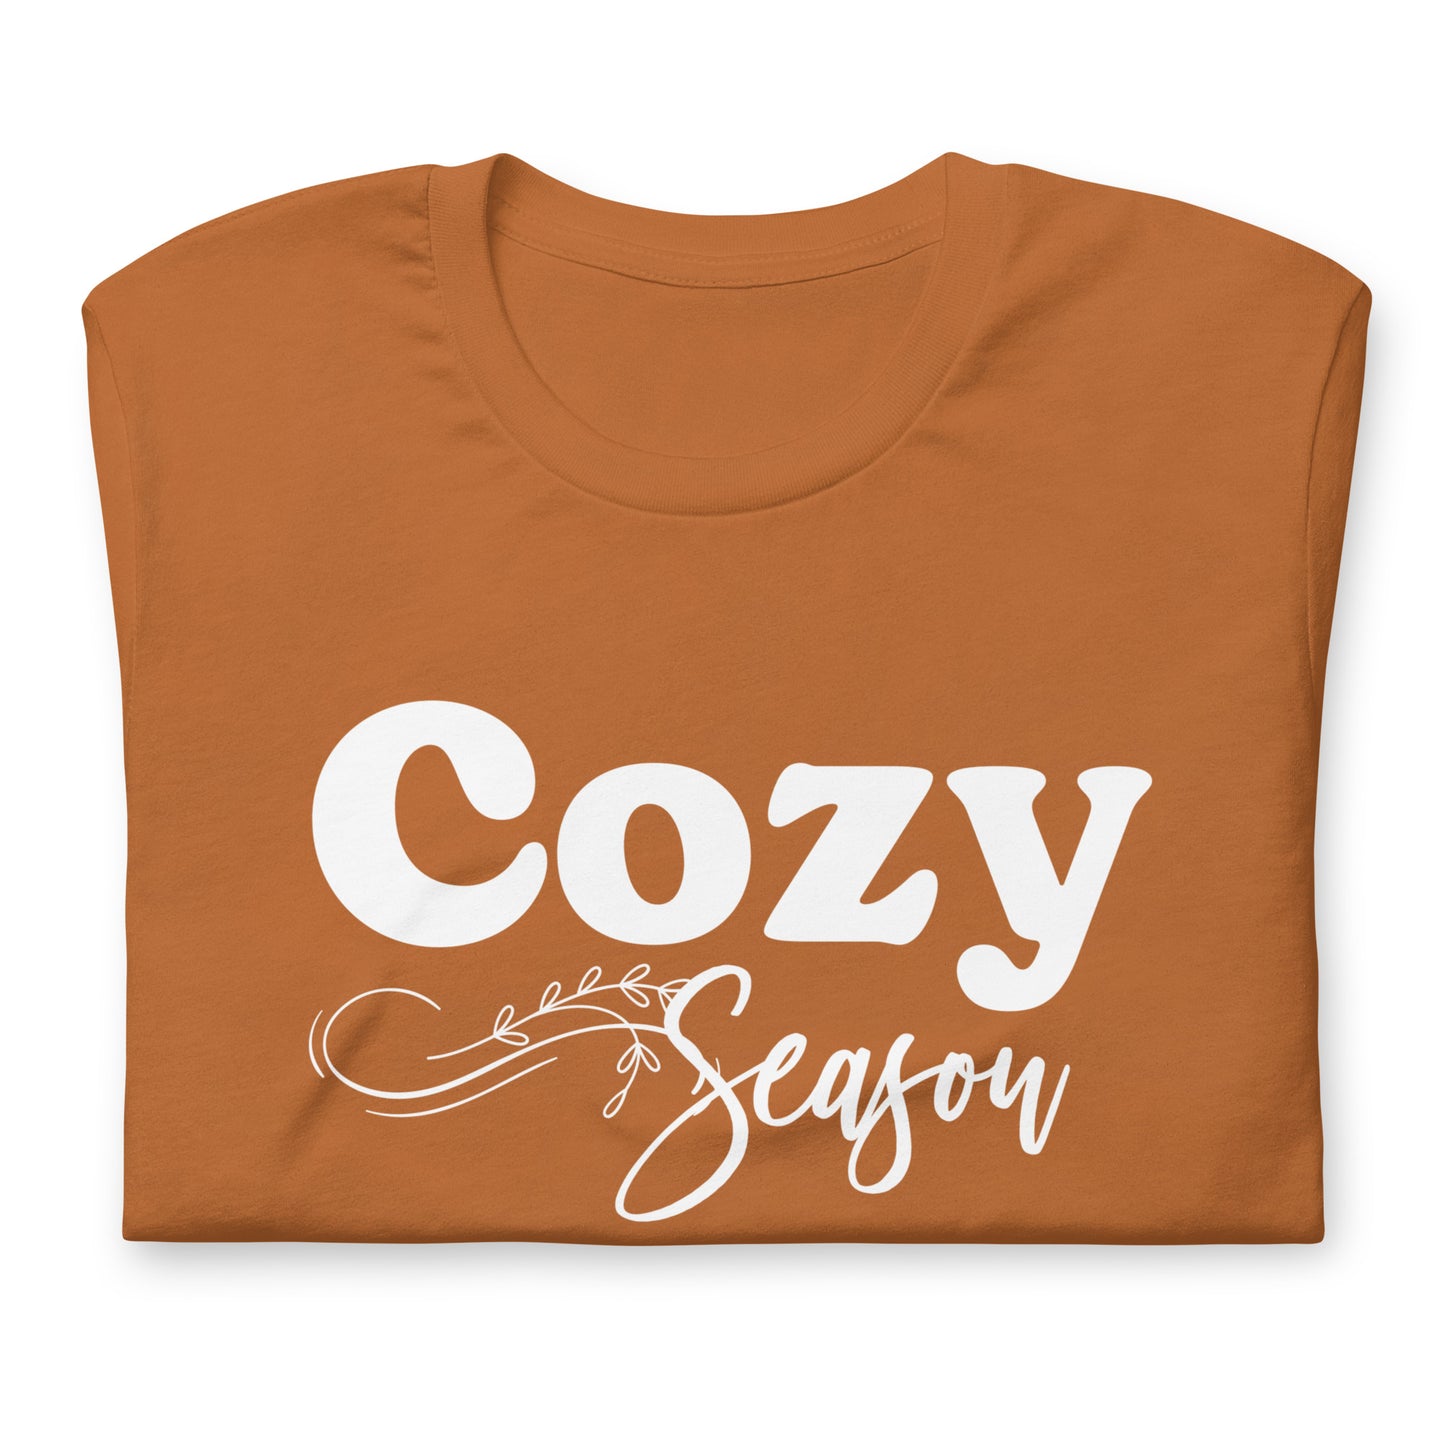 Cozy Season t-shirt